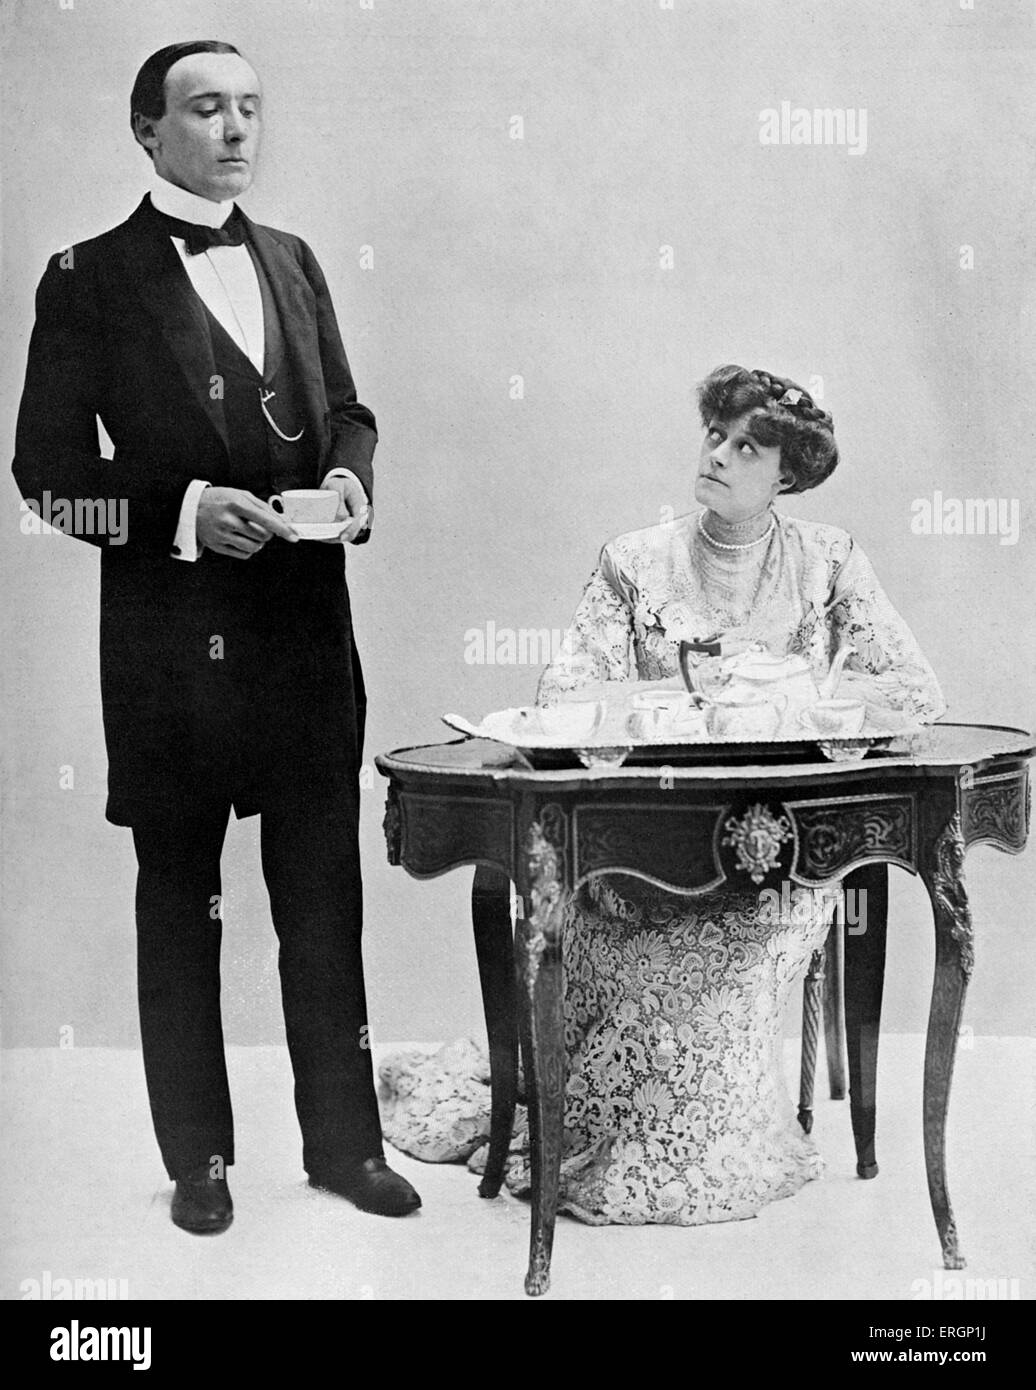 J M Barrie 'El Admirable Crichton', comedia escrita en 1902. Harry Brodribb Irving como Crichton y Dame Irene Vanbrugh como Lady Mary. Crichton: - Me avergüenzo de ser visto hablando con usted, mi señora. Lady Mary: - tan perfecto siervo como tú, todo esto debe ser más desagradable.Play fotografía pictórica. JMB: novelista y dramaturgo escocés, el 9 de mayo de 1860 - 19 de junio de 1937. HBI: El actor británico, el 5 de agosto de 1870 - 17 de octubre de 1919. IV: la actriz inglesa, 2 de diciembre de 1872 - 30 de noviembre de 1949. Foto de stock